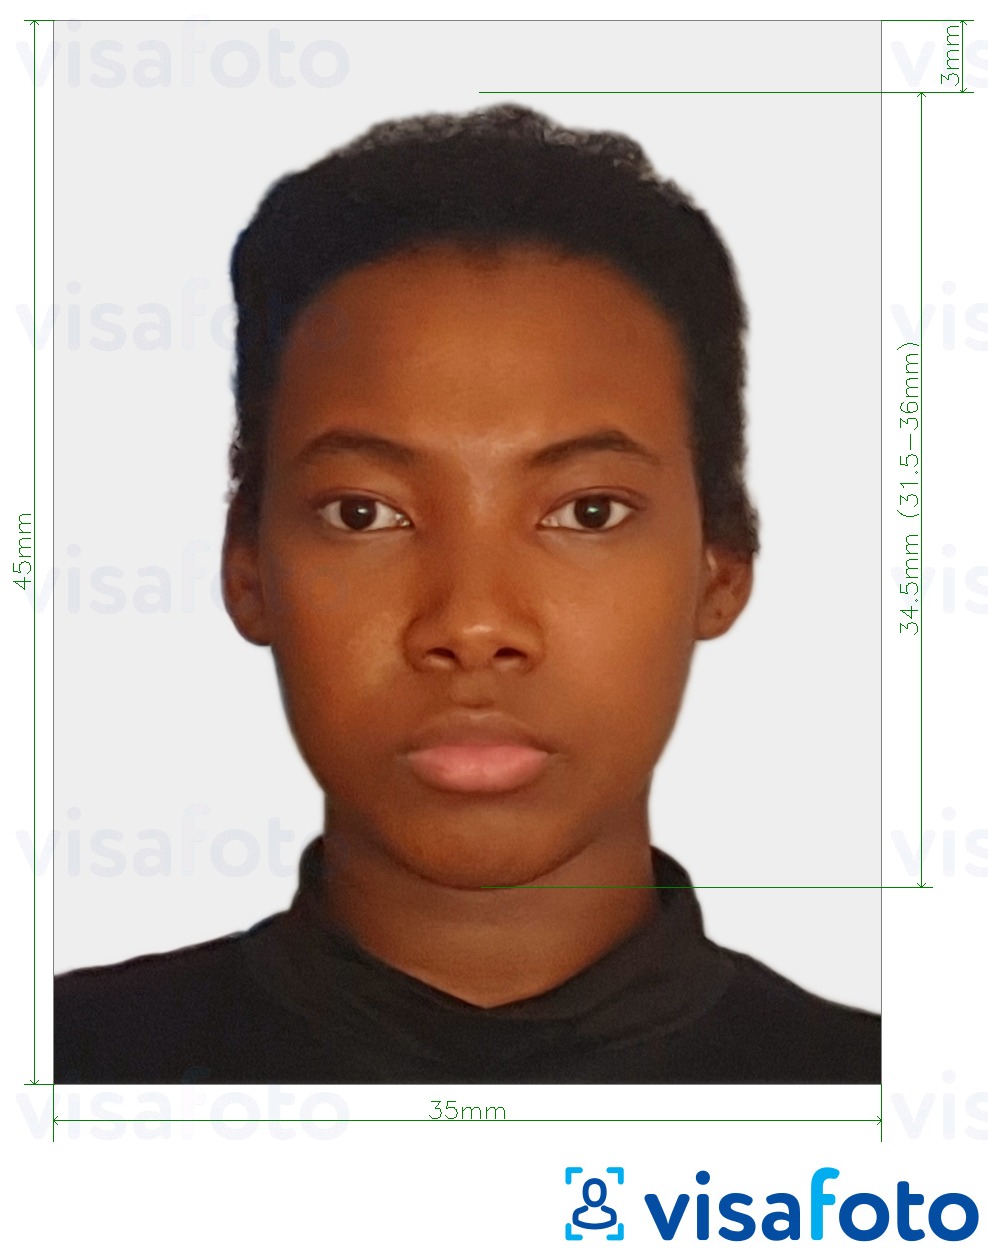 Ejemplo de foto para Pasaporte de Sudáfrica 35x45 mm (3,5x4,5 cm) con la especificación del tamaño exacto